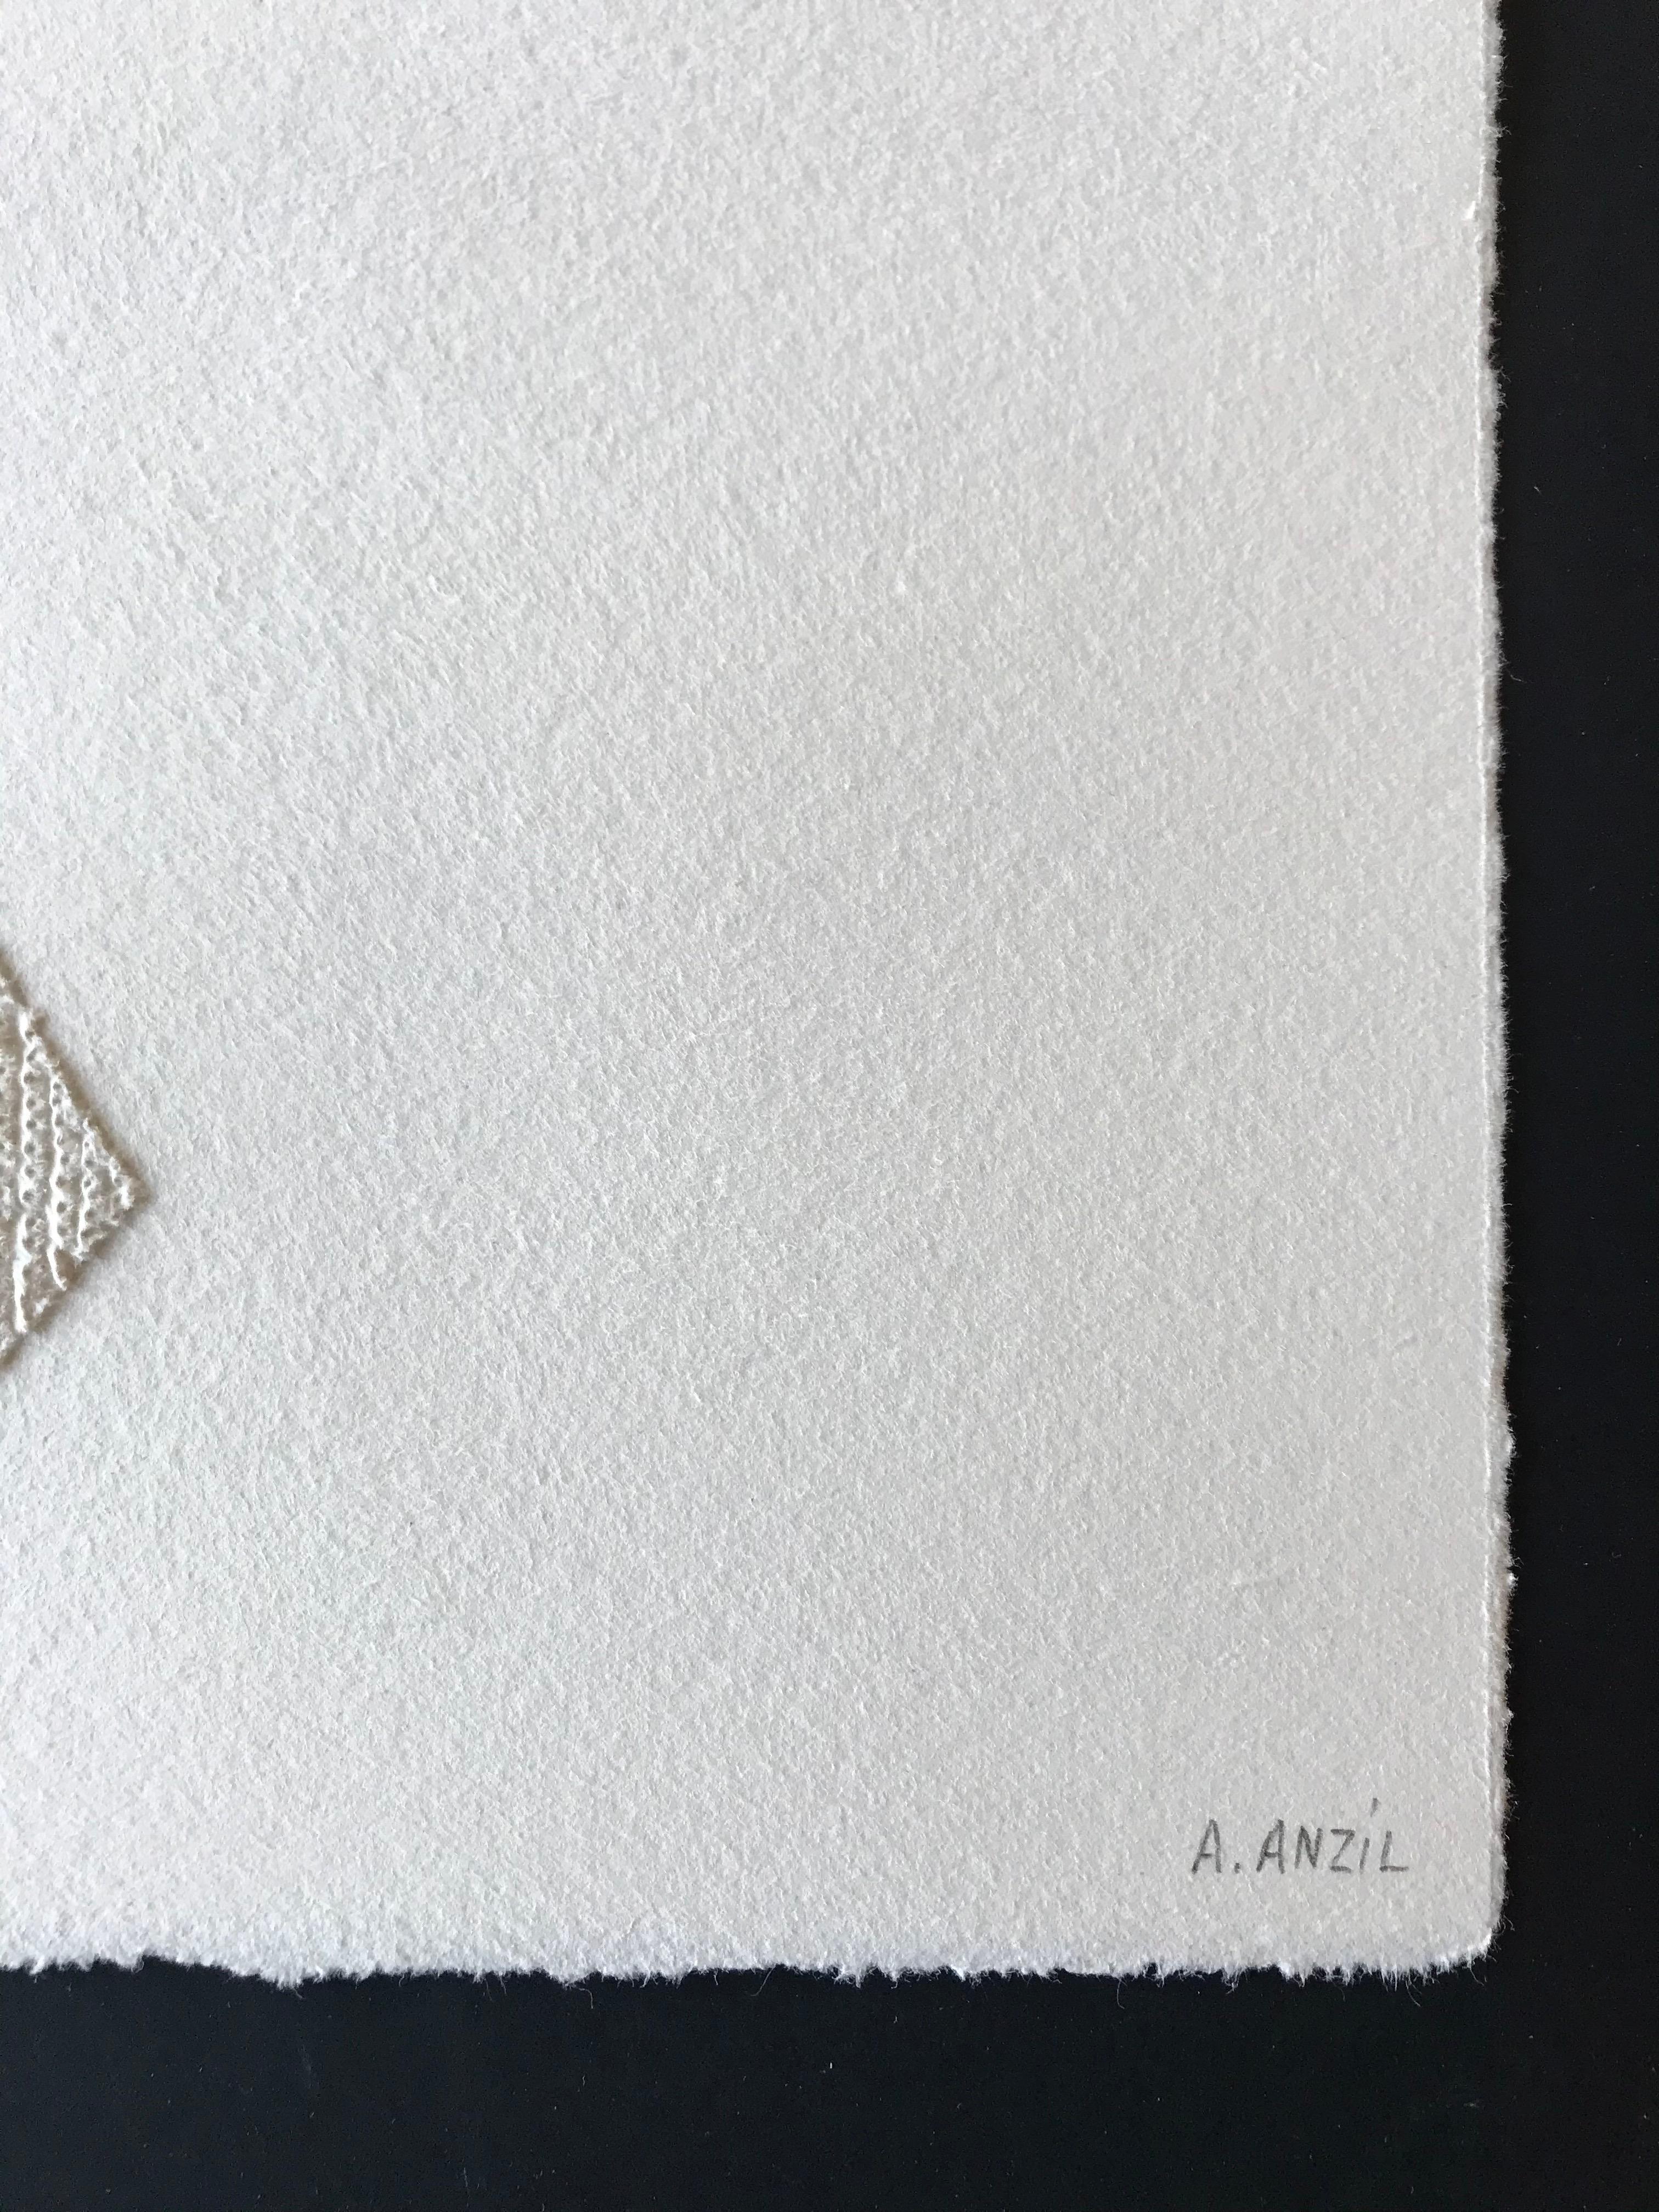 Locus 2 dessins géométriques abstraits en or blanc complexes en 3D et collages sur papier - Géométrique abstrait Art par Antonin Anzil